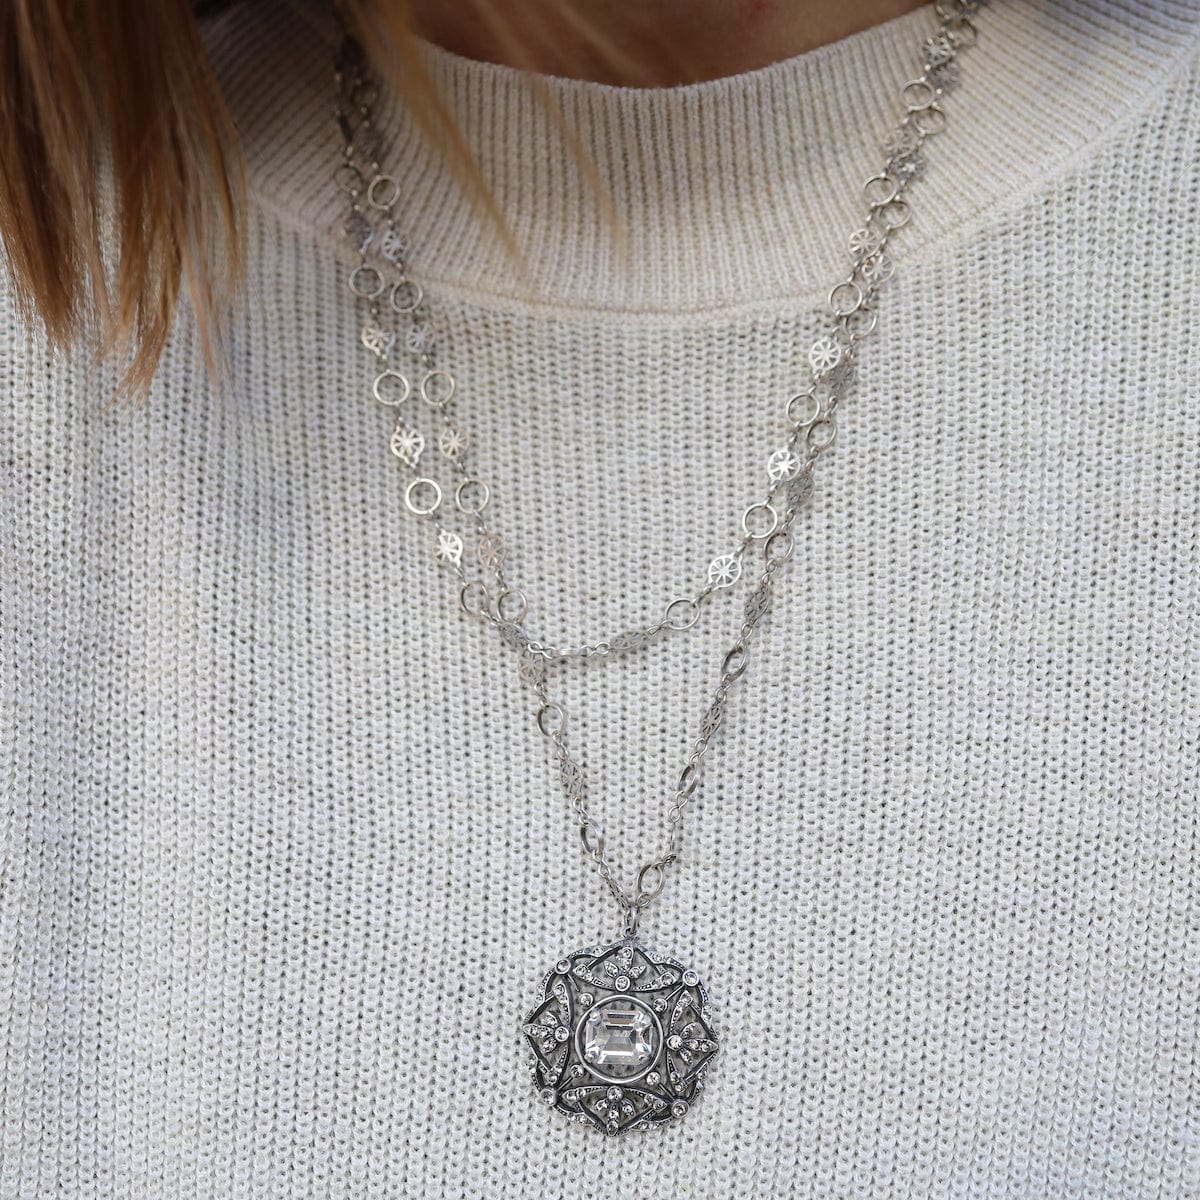 NKL-JM "Old Silver" Crystal Medallion Necklace